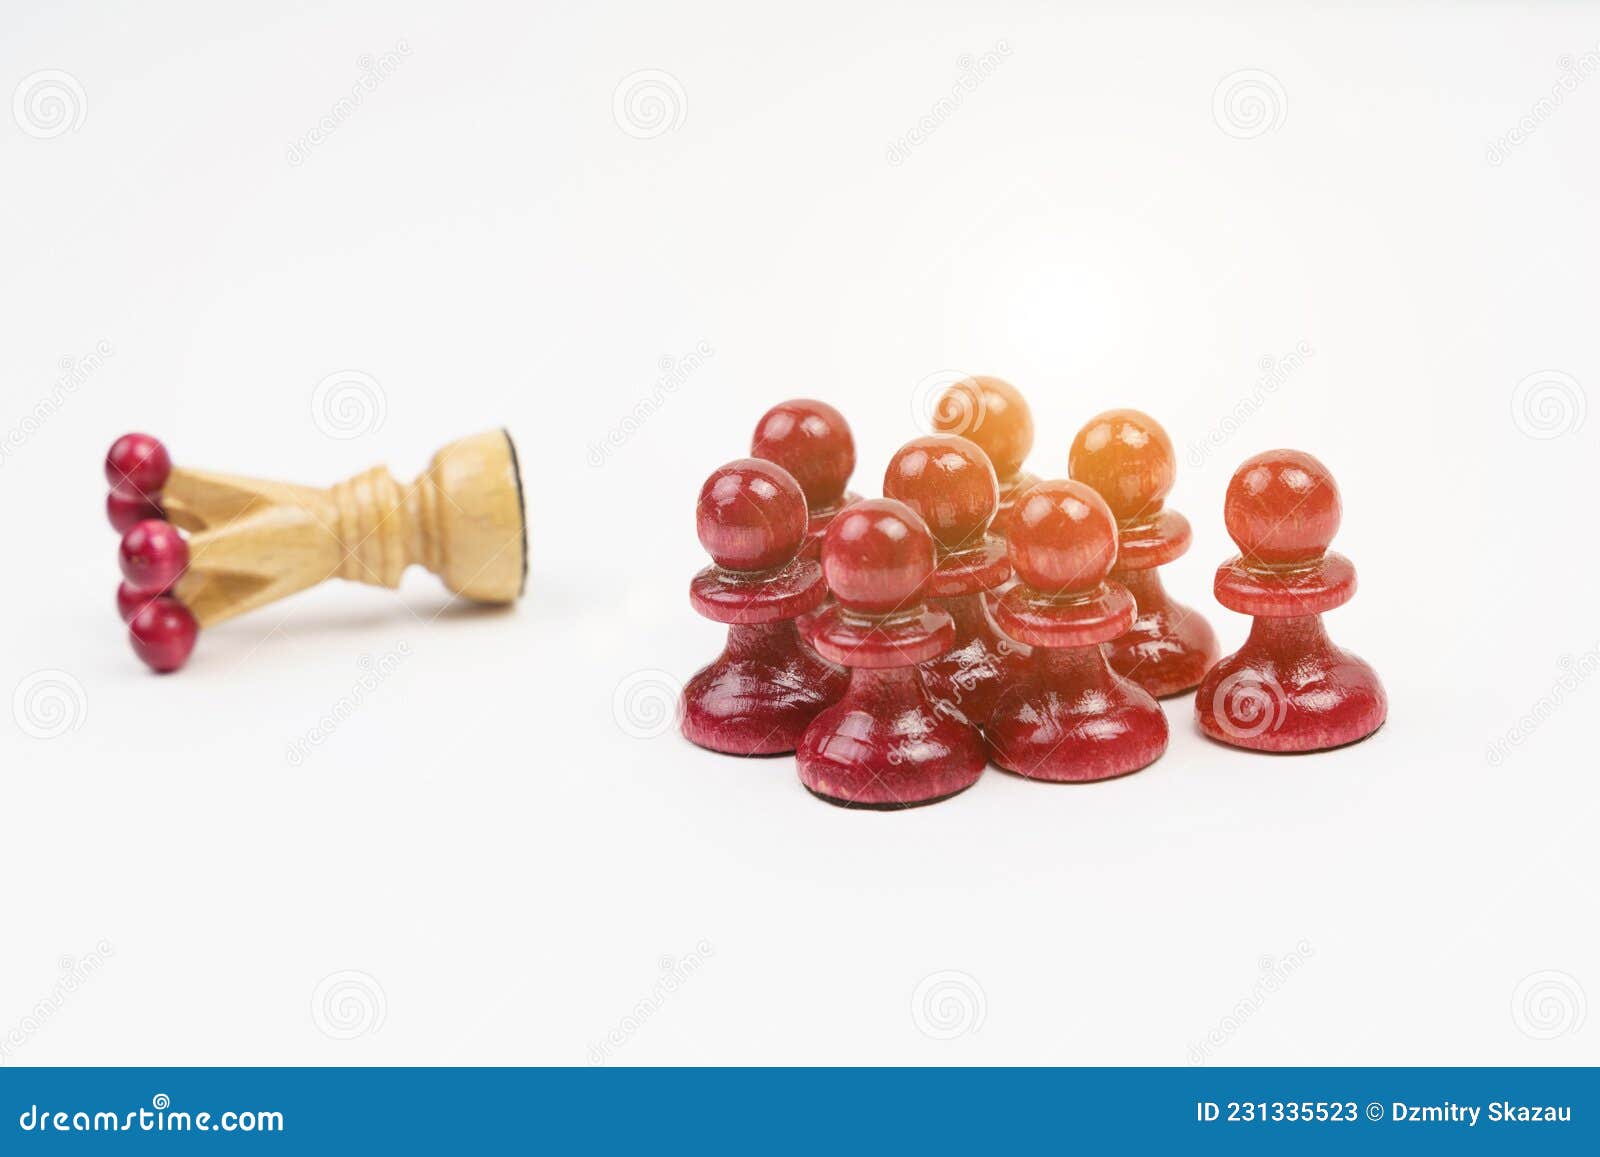 Homem derrotando rei peça de xadrez com peão - Stockphoto #26087832